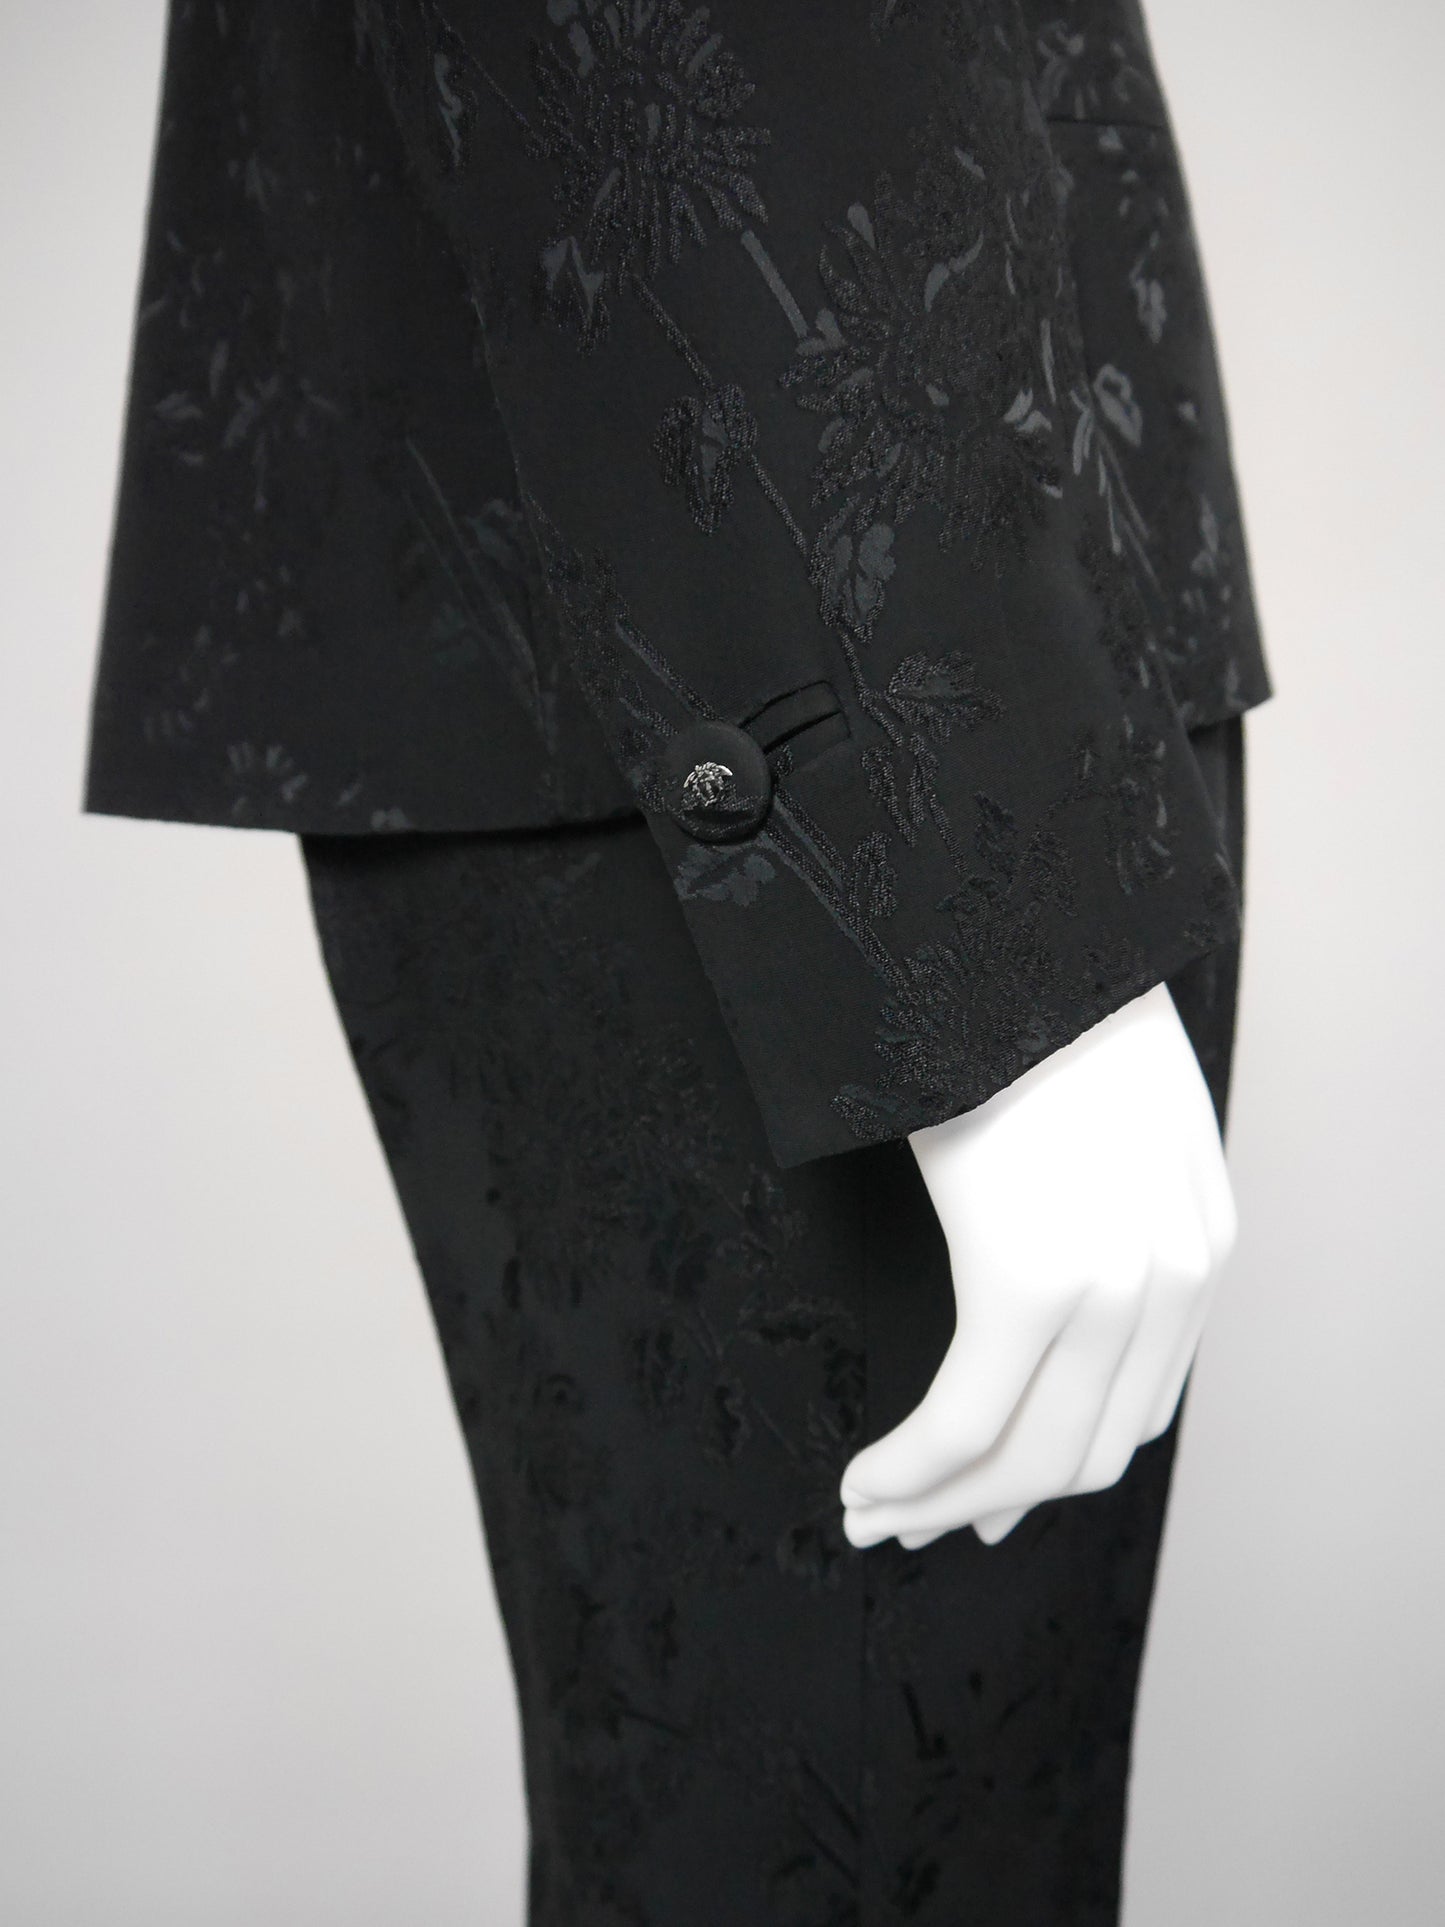 GIANNI VERSACE Couture 1990s 2000s Vintage Floral Jacquard Pants & Jacket Suit Size S